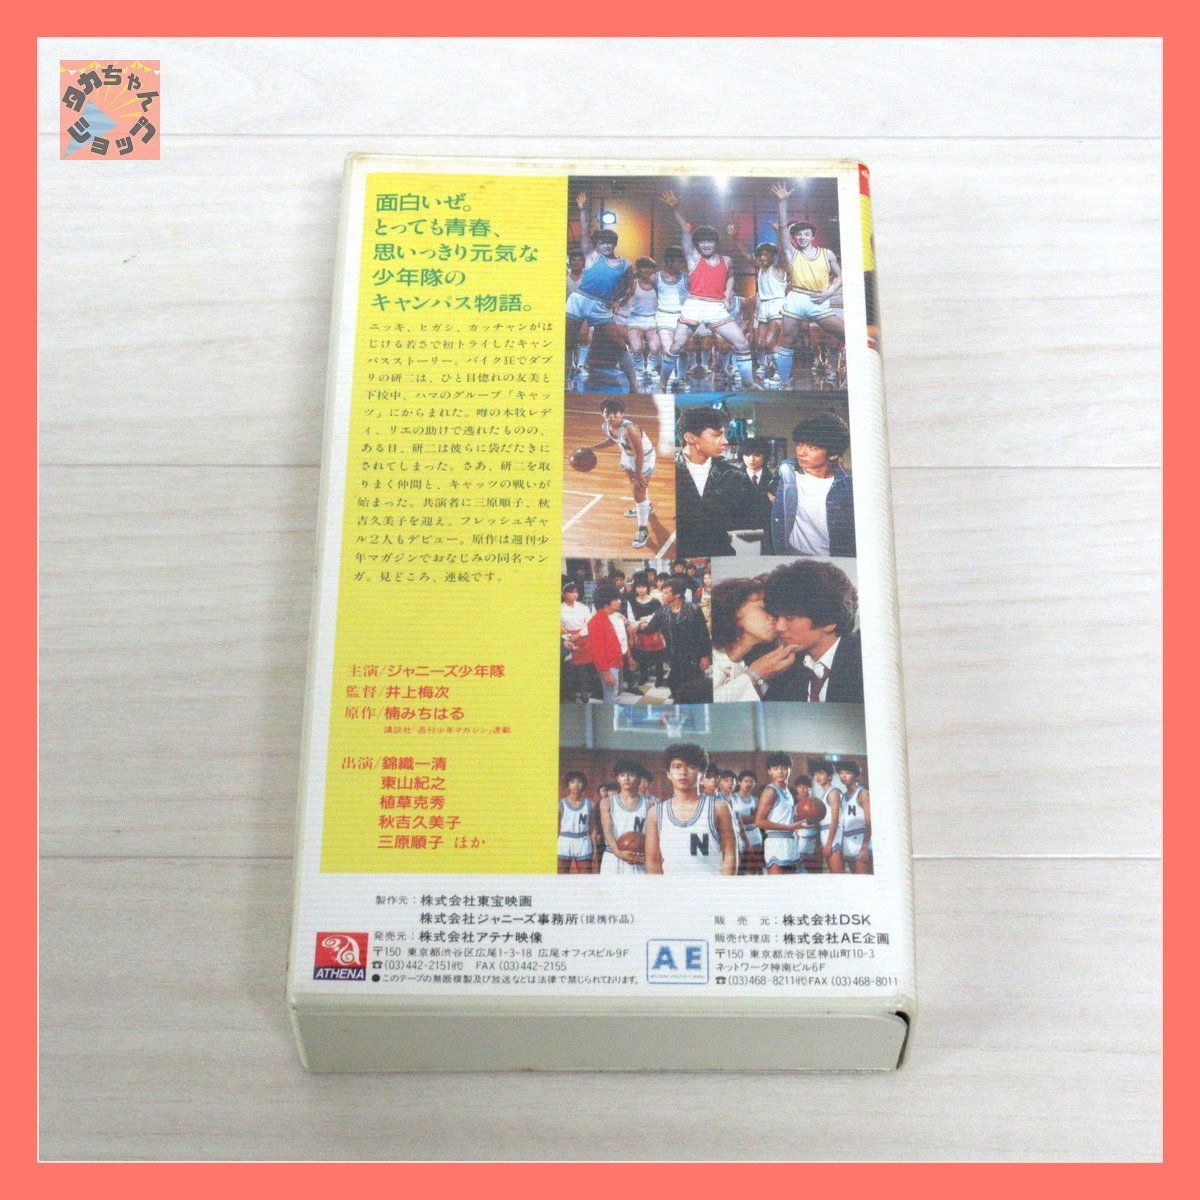 少年隊 ビデオテープ VHS 東京宝塚シアター 東山紀之 錦織一清 植草